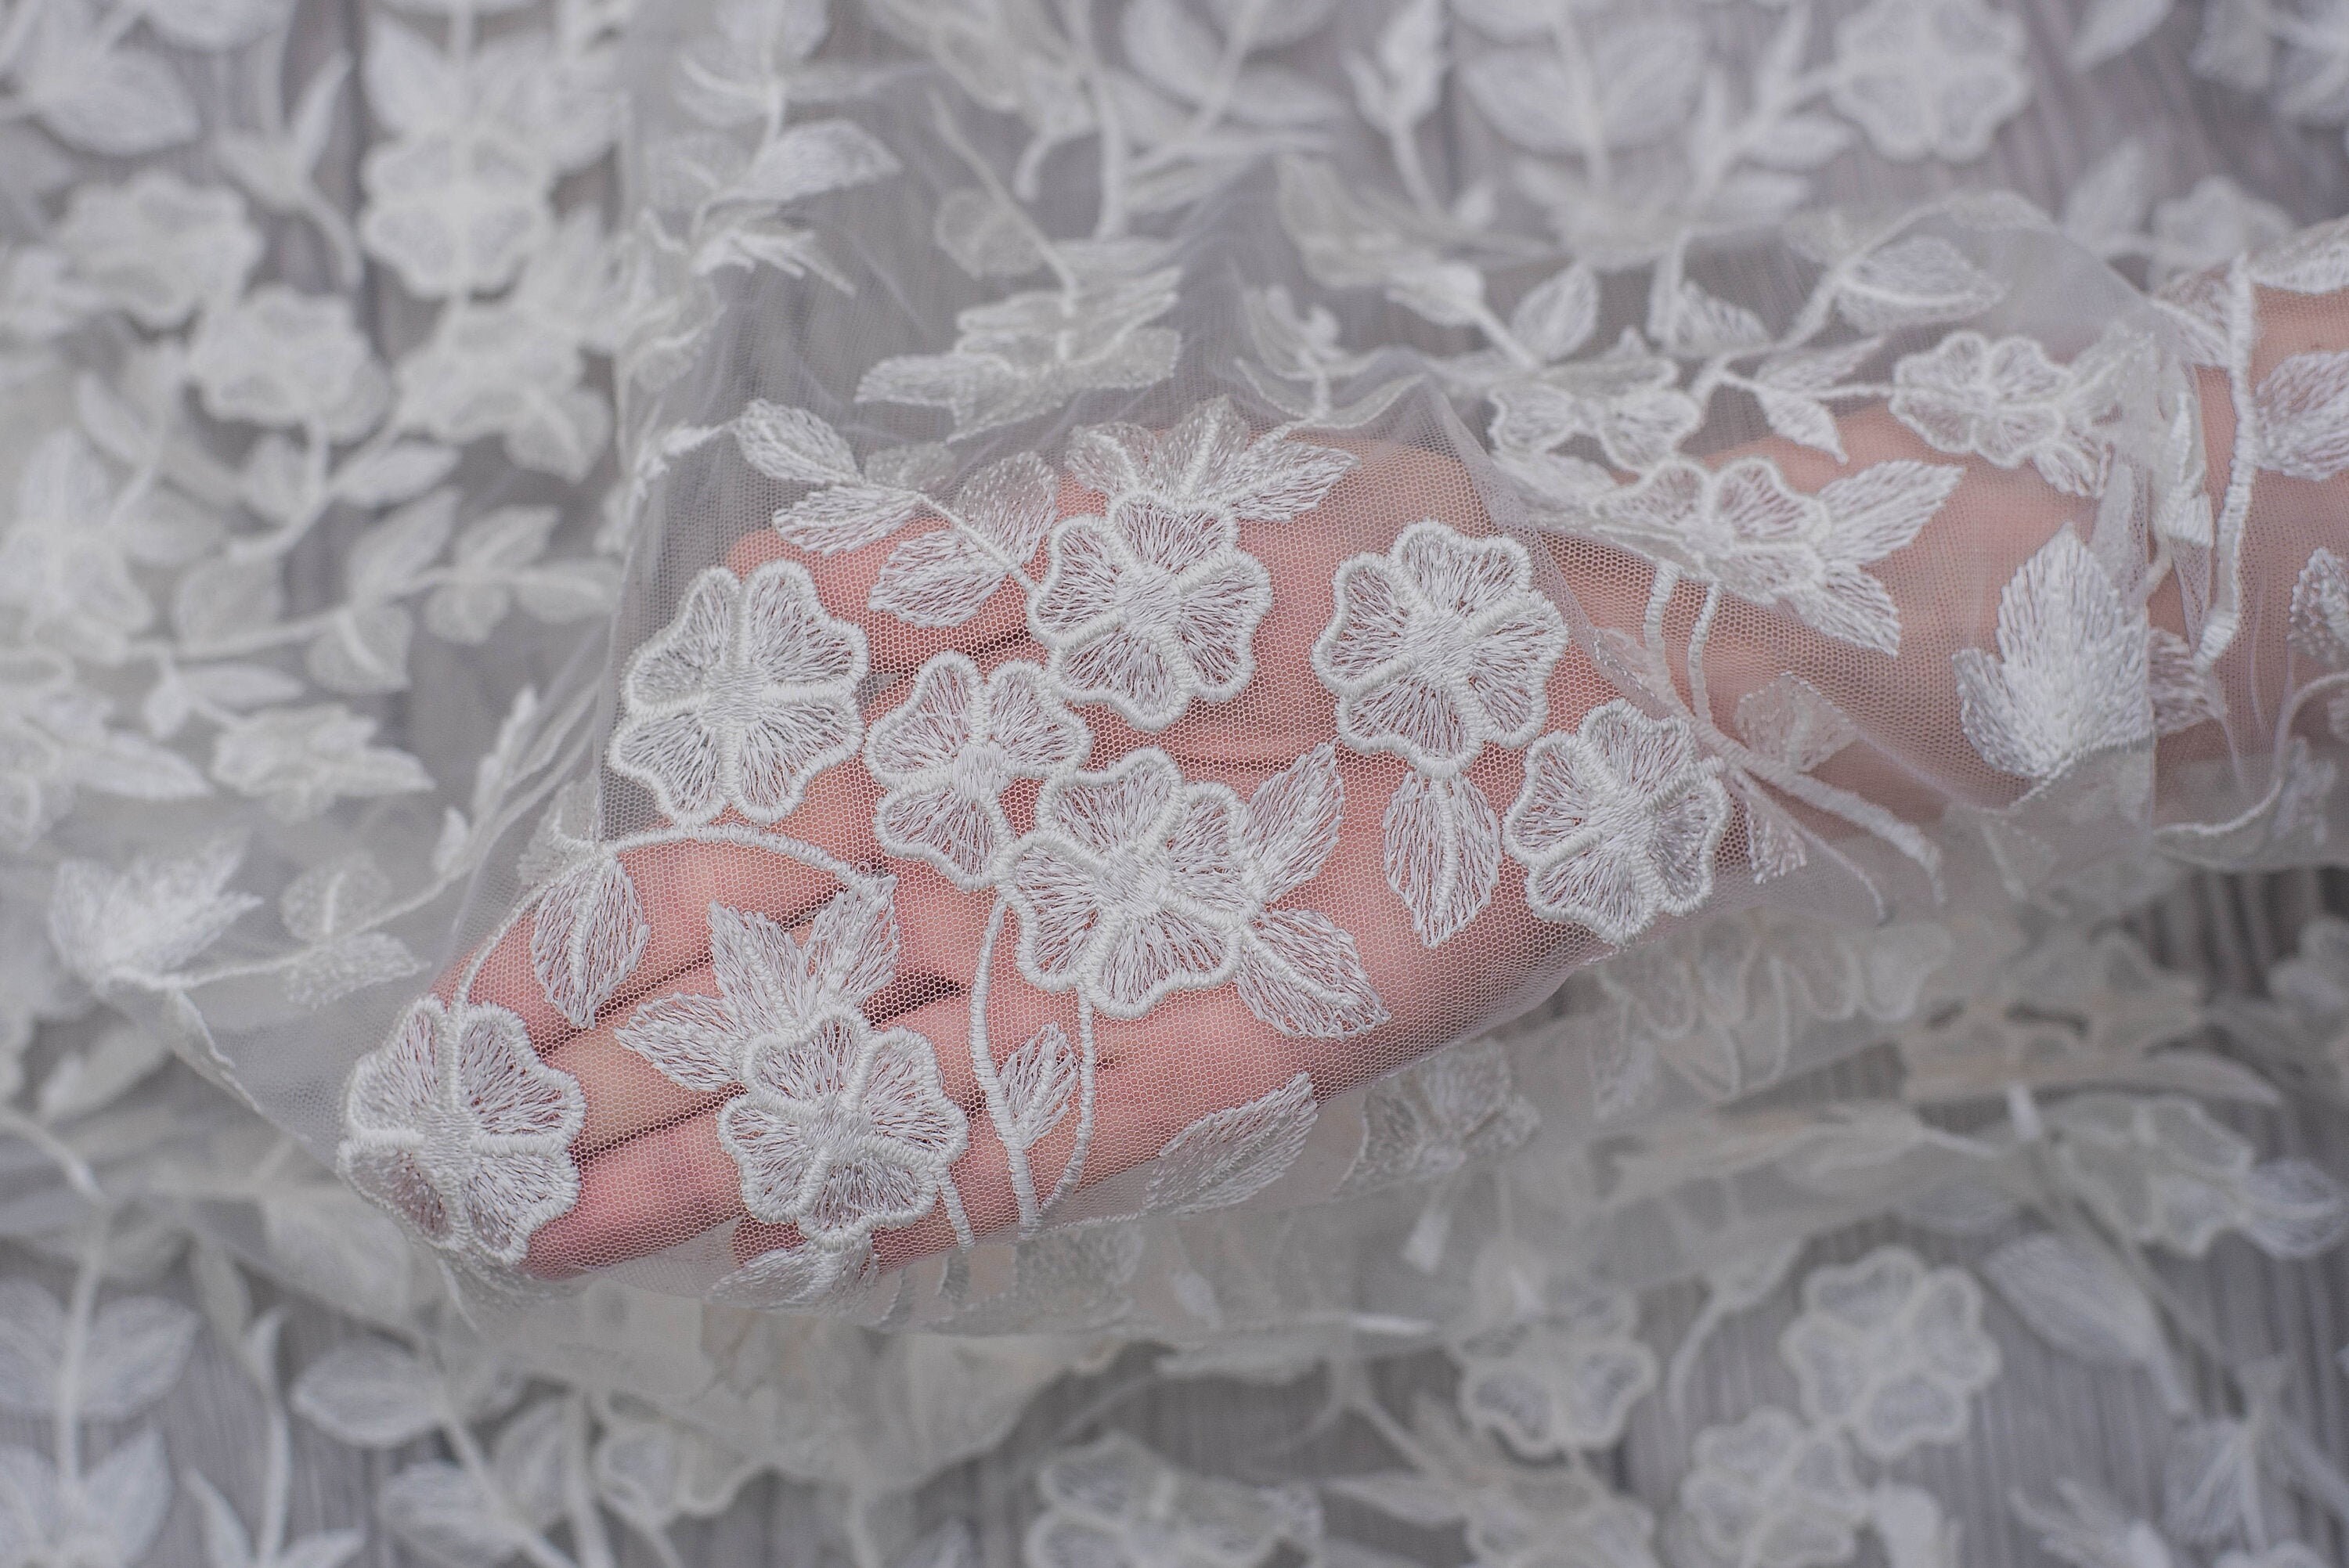 Boho Lace Fabric for Wedding Dress White Cotton Lace Fabric - Etsy